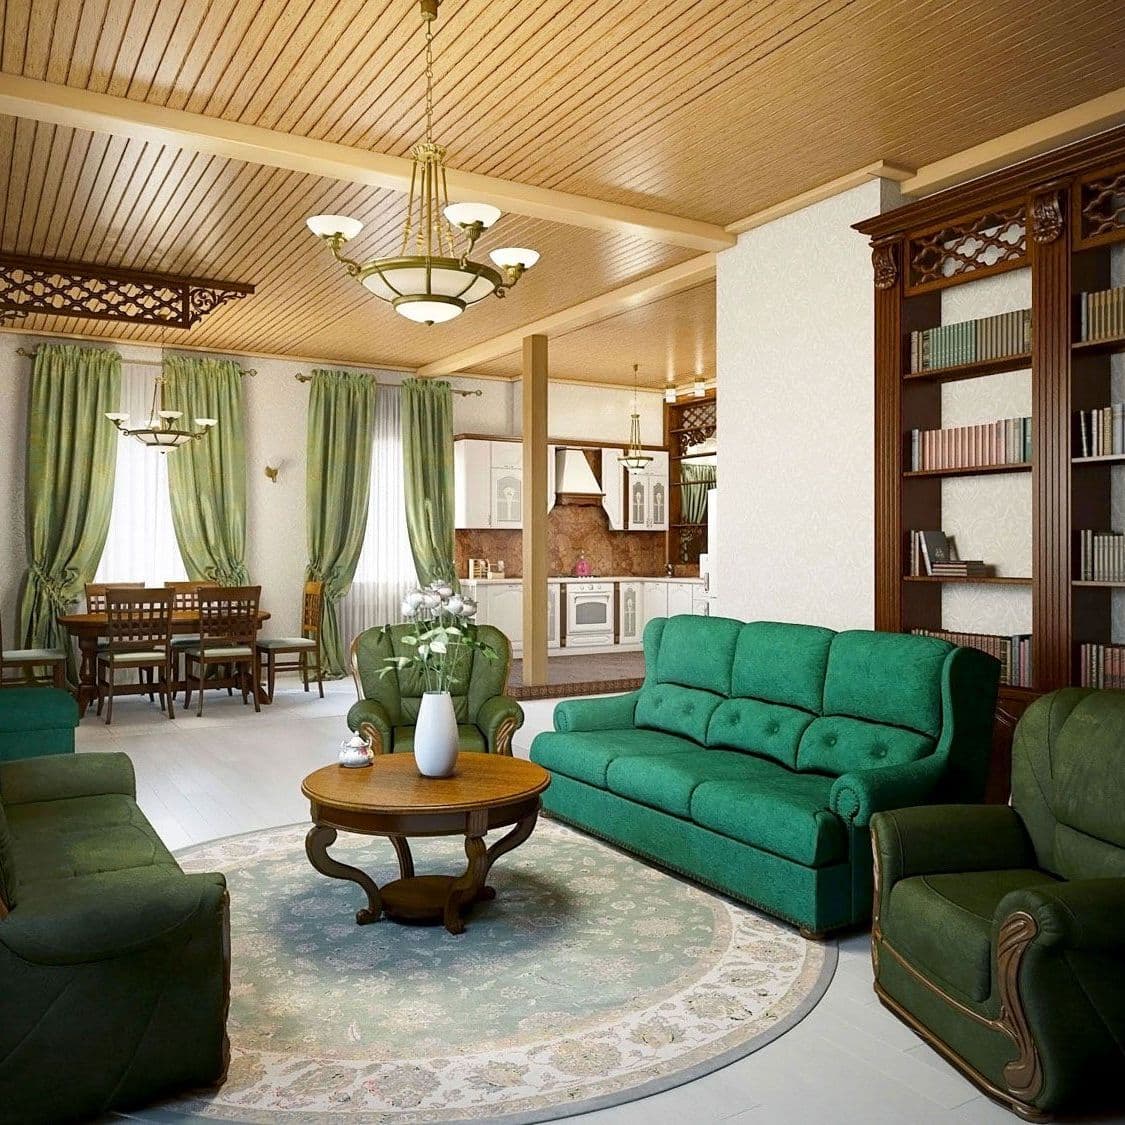 Интерьер гостиной дома в классическом русском стиле с камином, большим книжным шкафом, в зеленых тонах, с деревянным потолком, вид 2